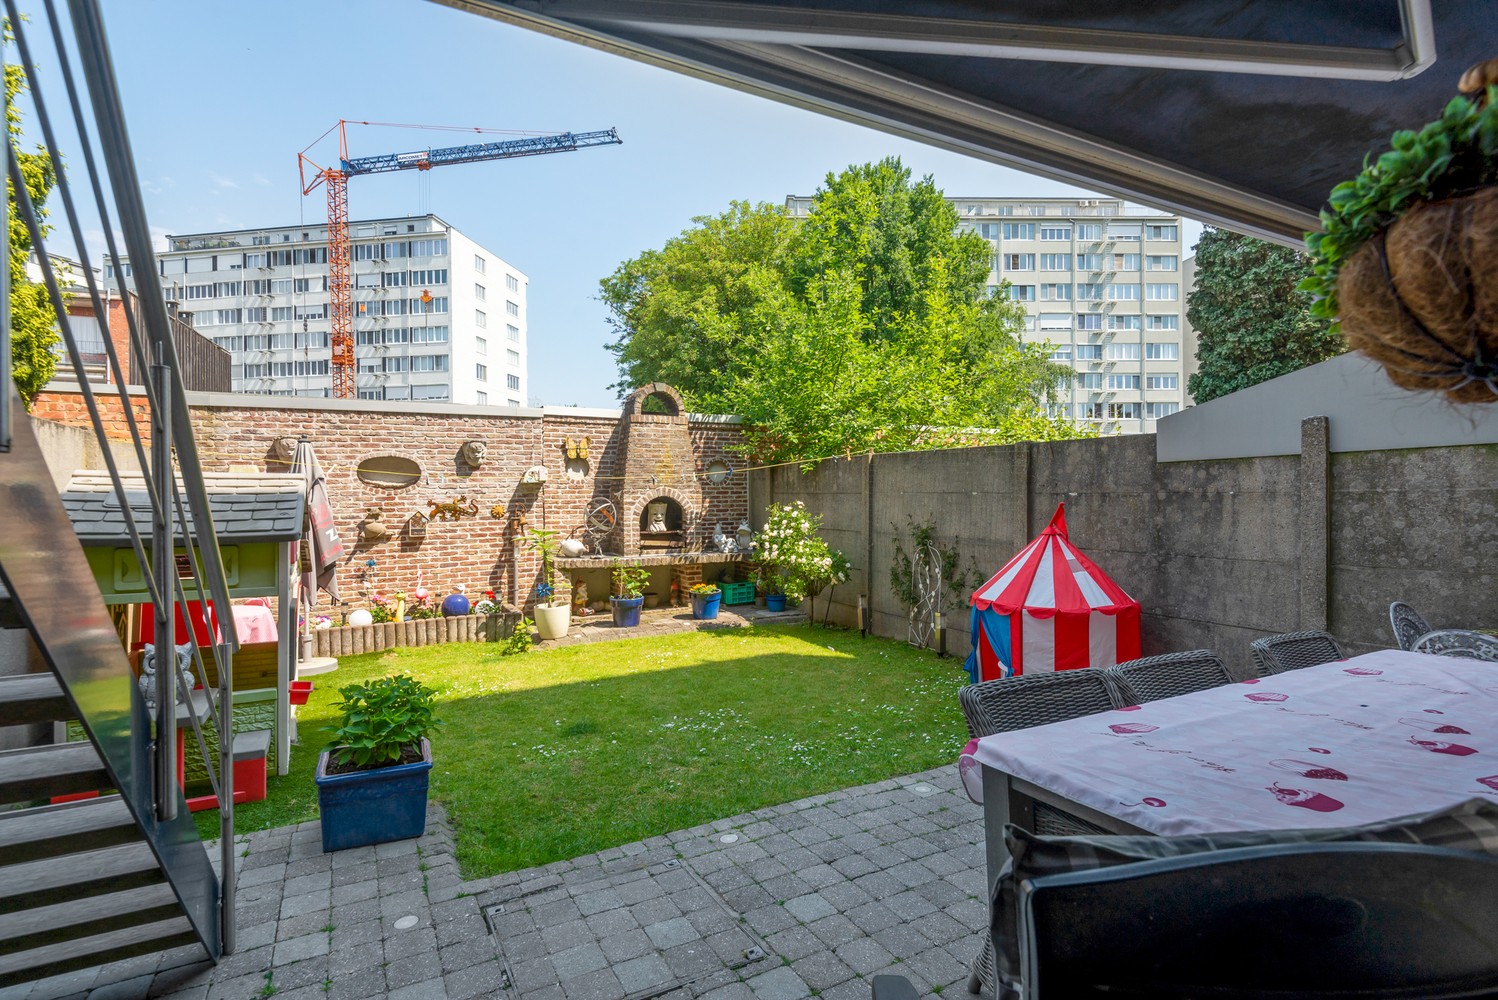 Appartement met tuin, terras en twee slaapkamers te koop in Deurne! afbeelding 14